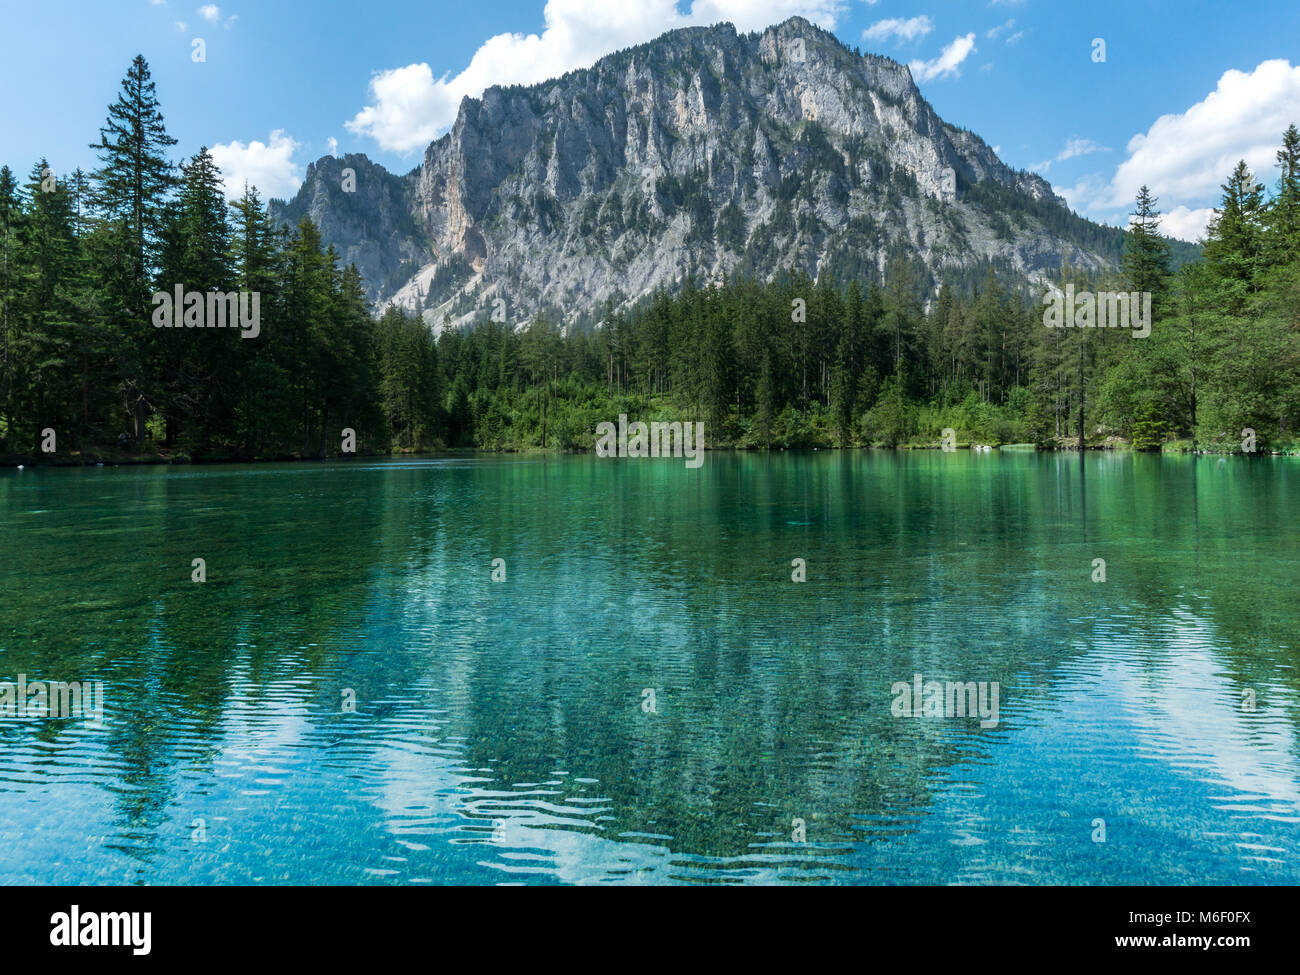 Imagen perfecta lago alpino reflejando una imponente montaña al fondo, en un soleado día de verano Foto de stock